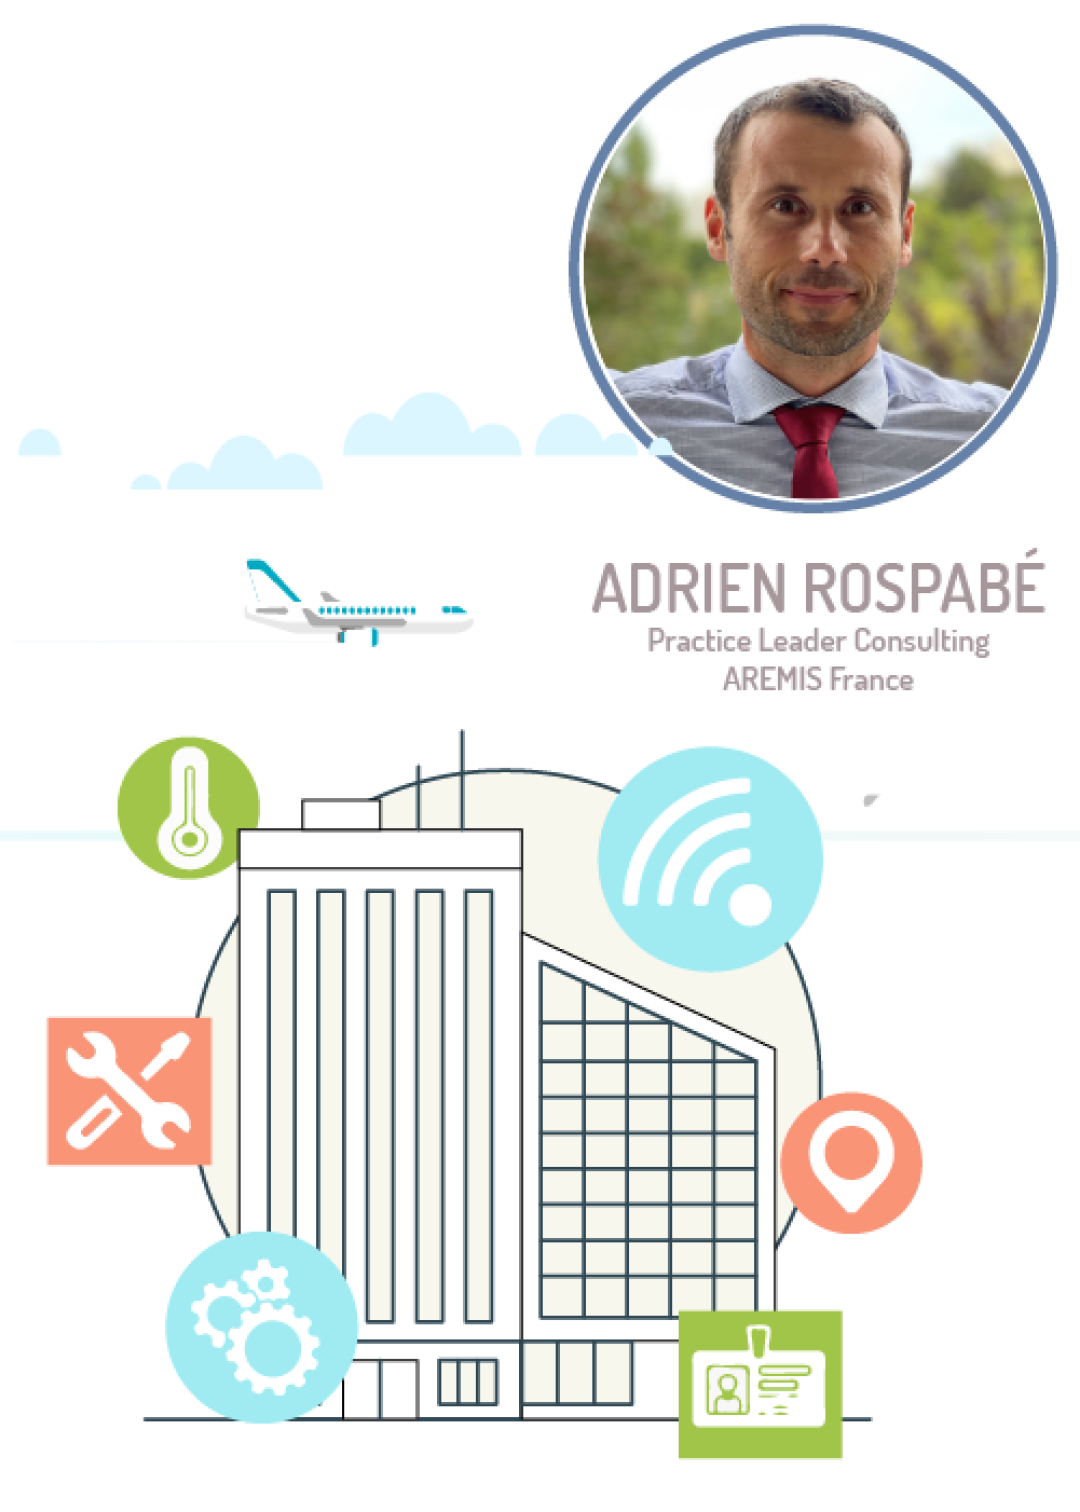 Adrien Rospabé - practice leader consulting